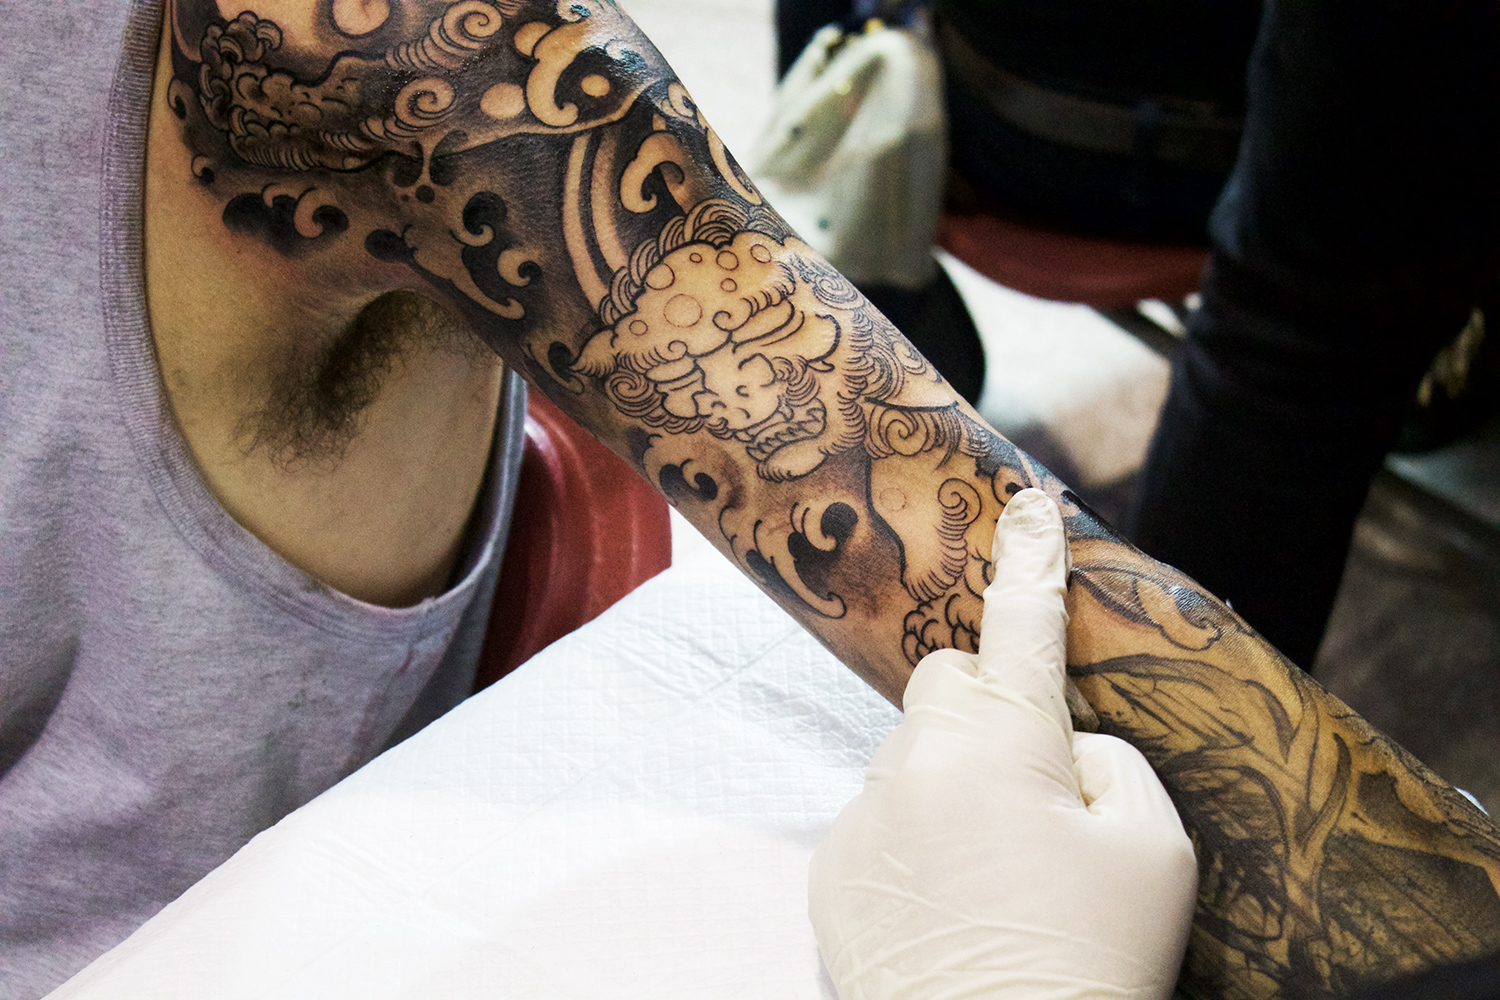 Art Tattoo Montreal Show, Fibs tattoo